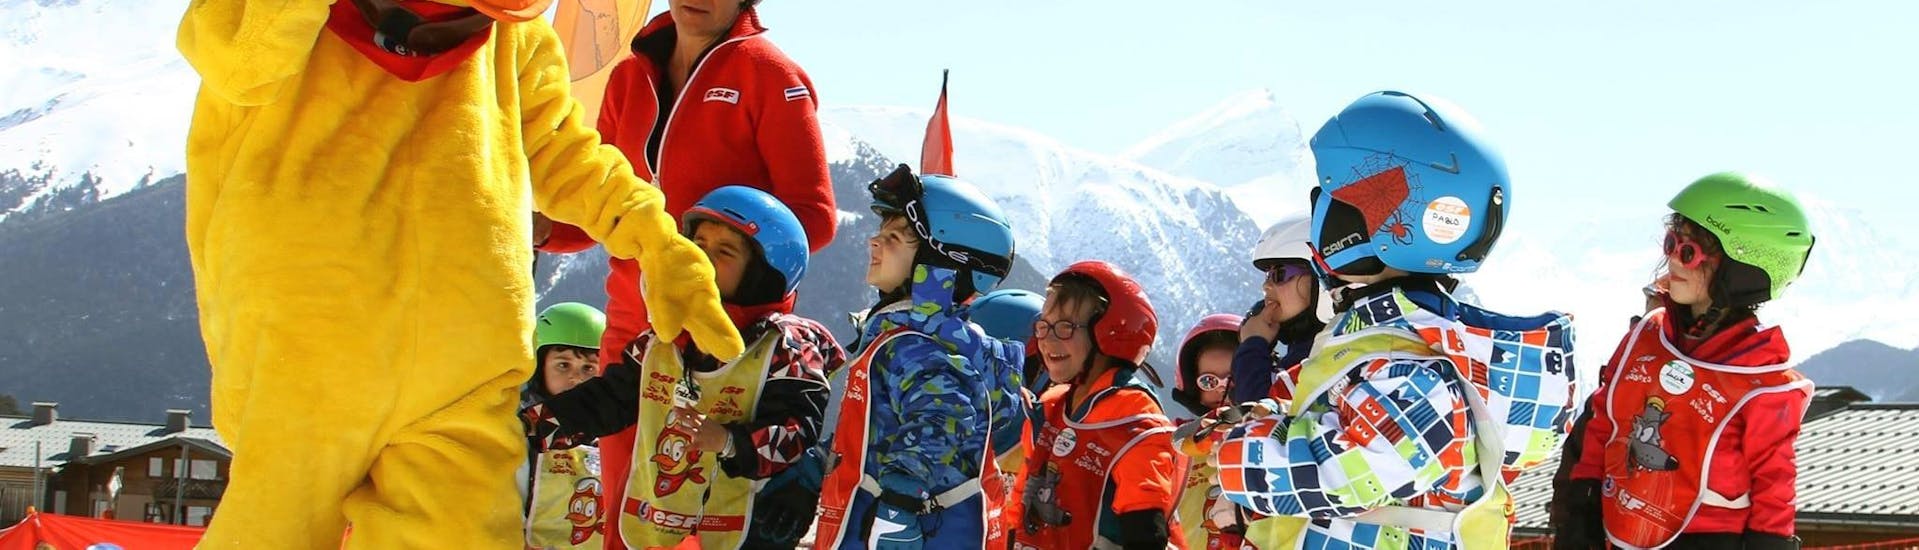 Les enfants sont heureux d'apprendre à skier avec la mascotte de l'école de ski ESF Aussois lors de leur Premier Cours de ski Enfants "École des neiges" (2½-3 ans).